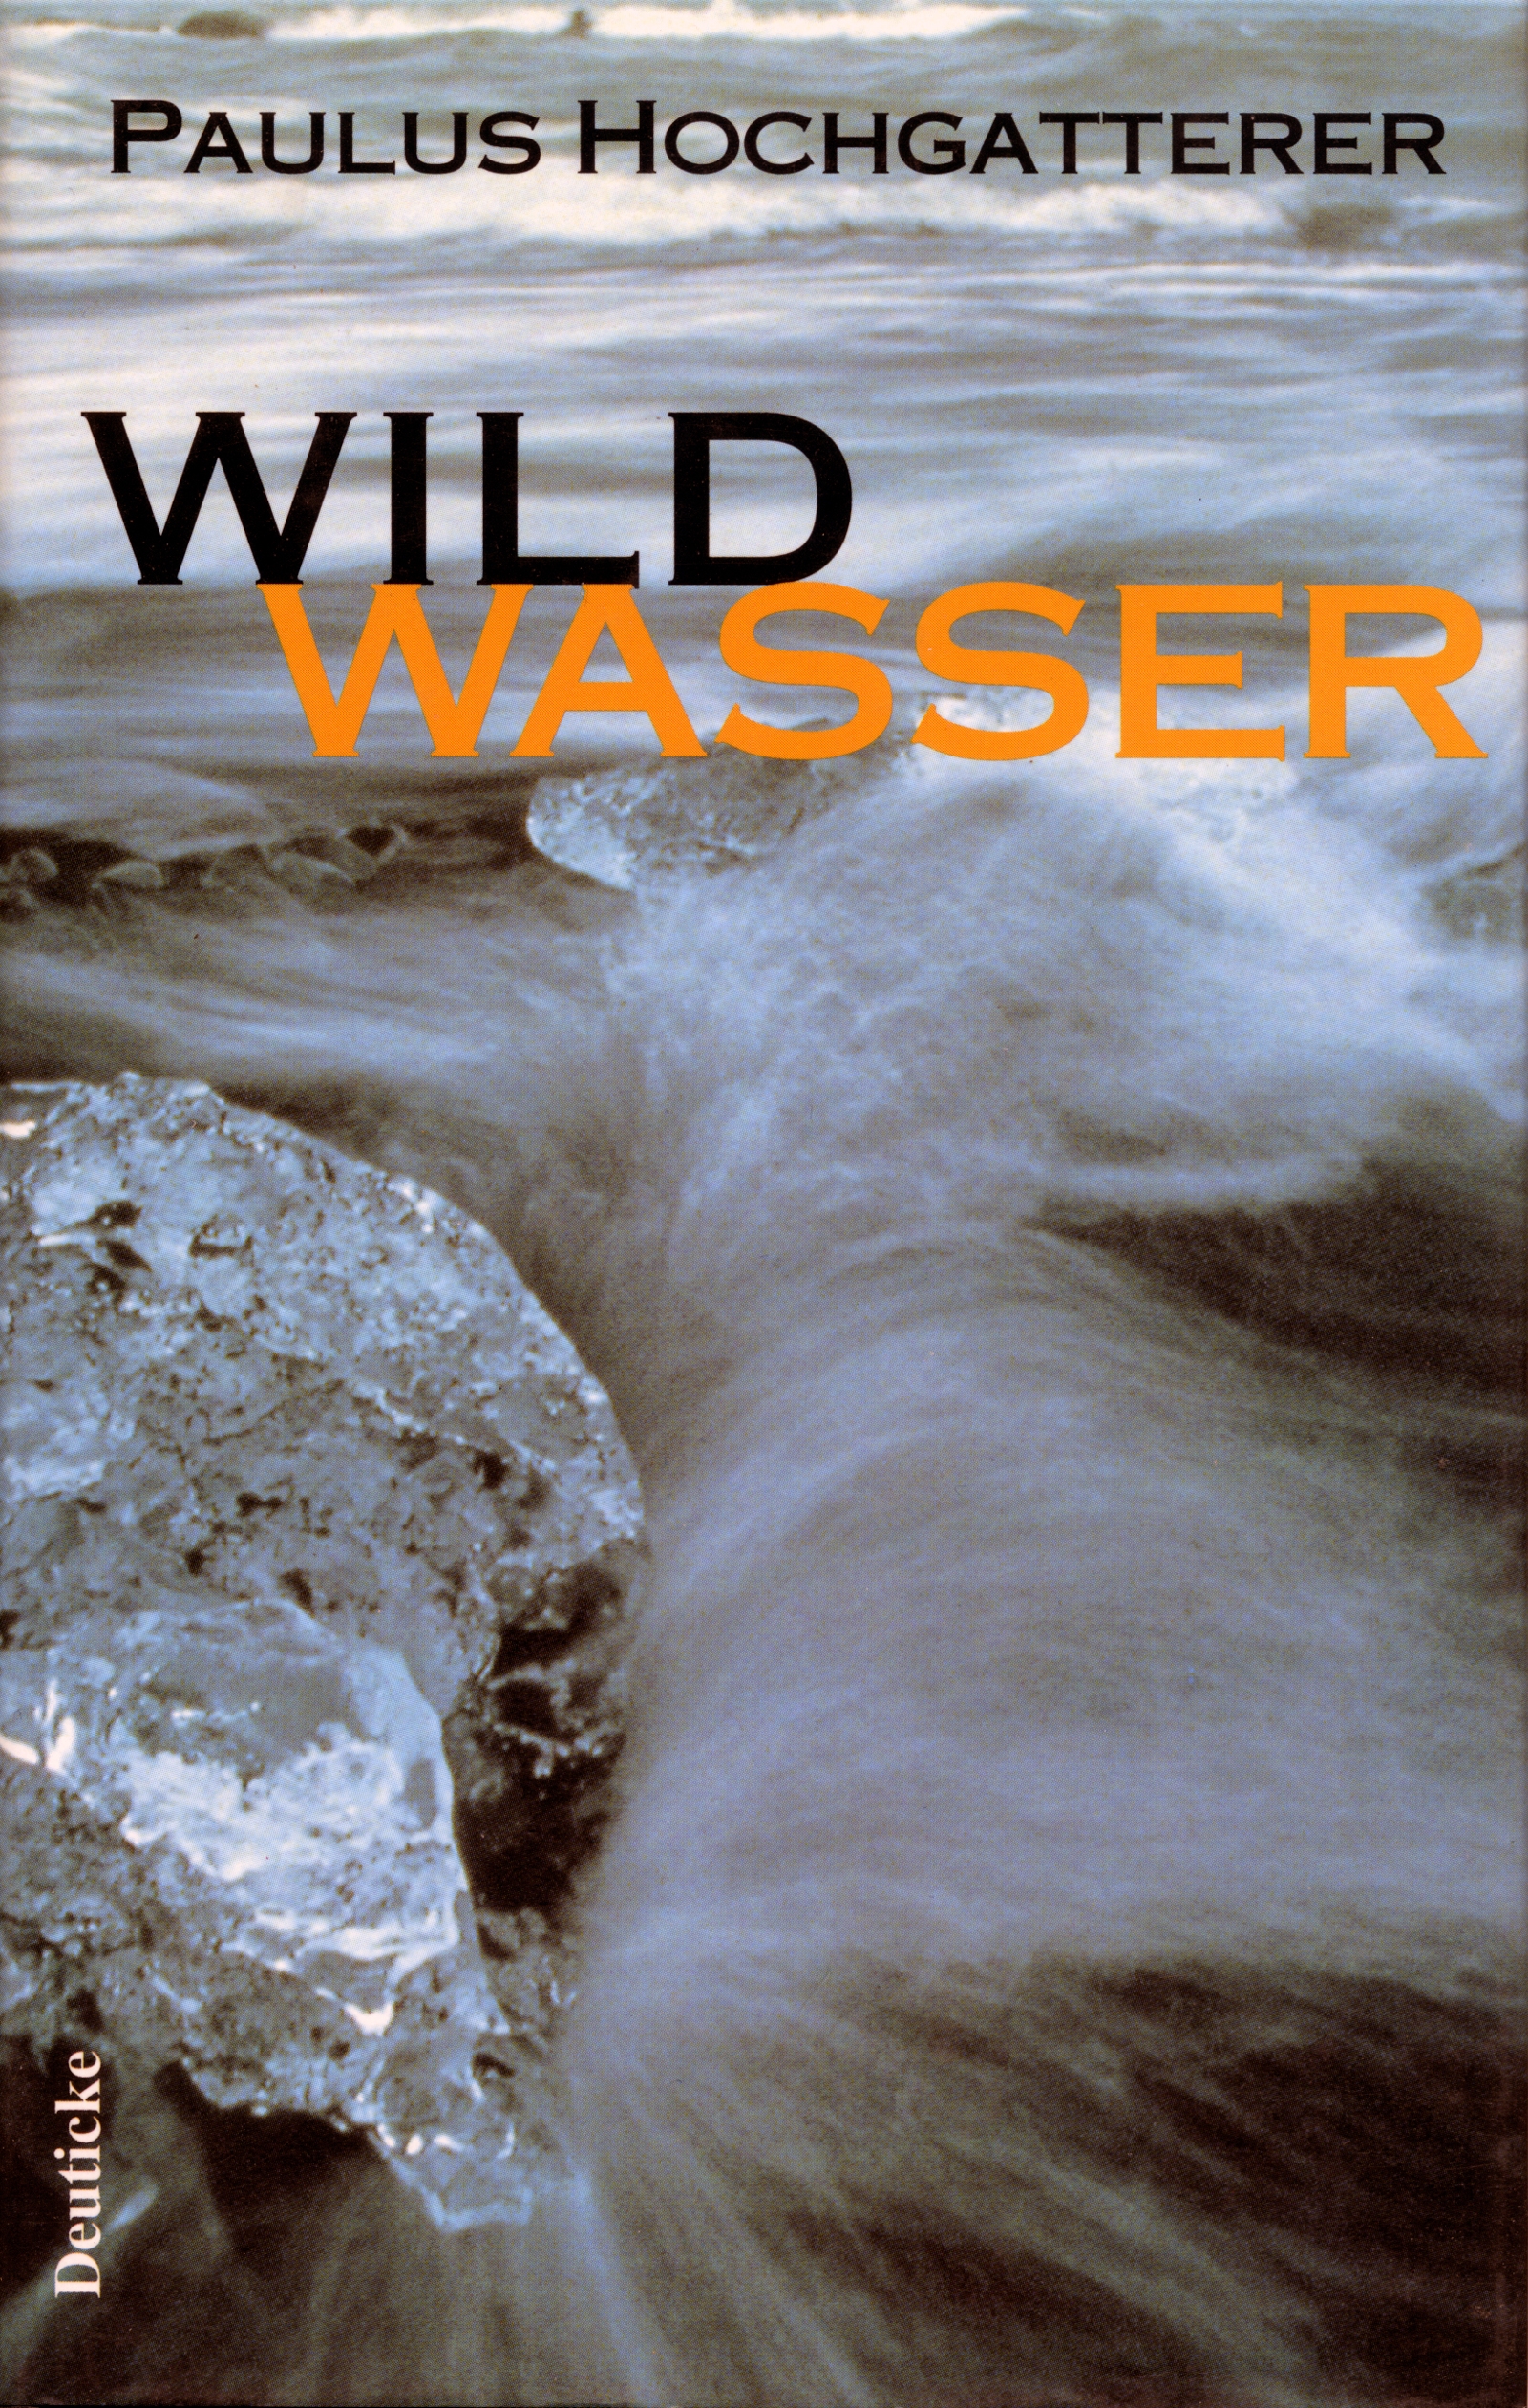 Wildwasser